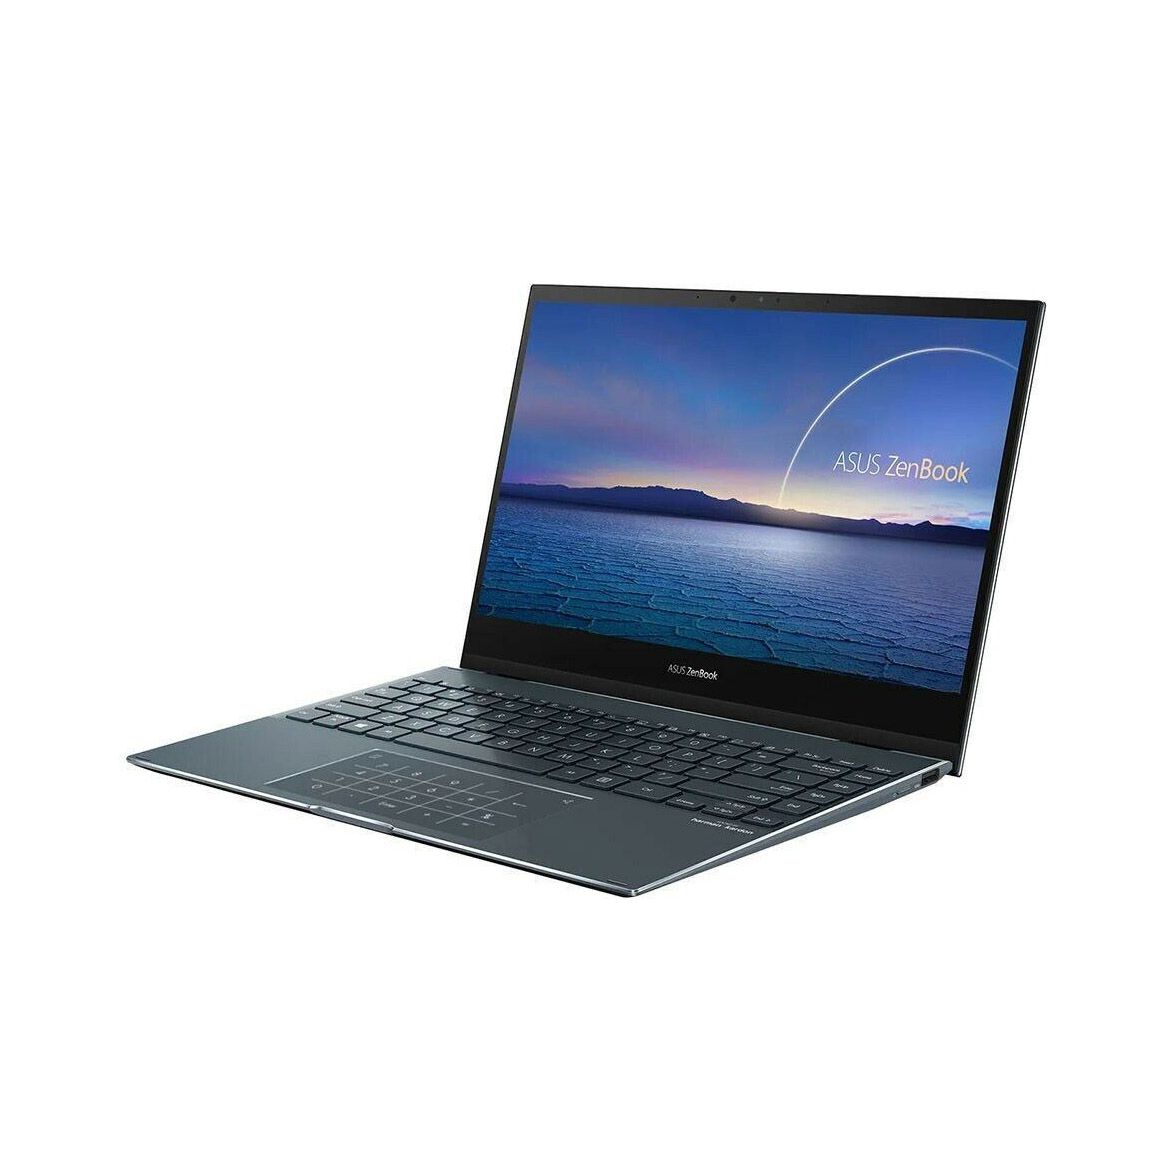 ASUS ZenBook Flip 13.3" 2 in 1 Laptop Touch Intel i5 10th Gen 8GB RAM 512GB SSD